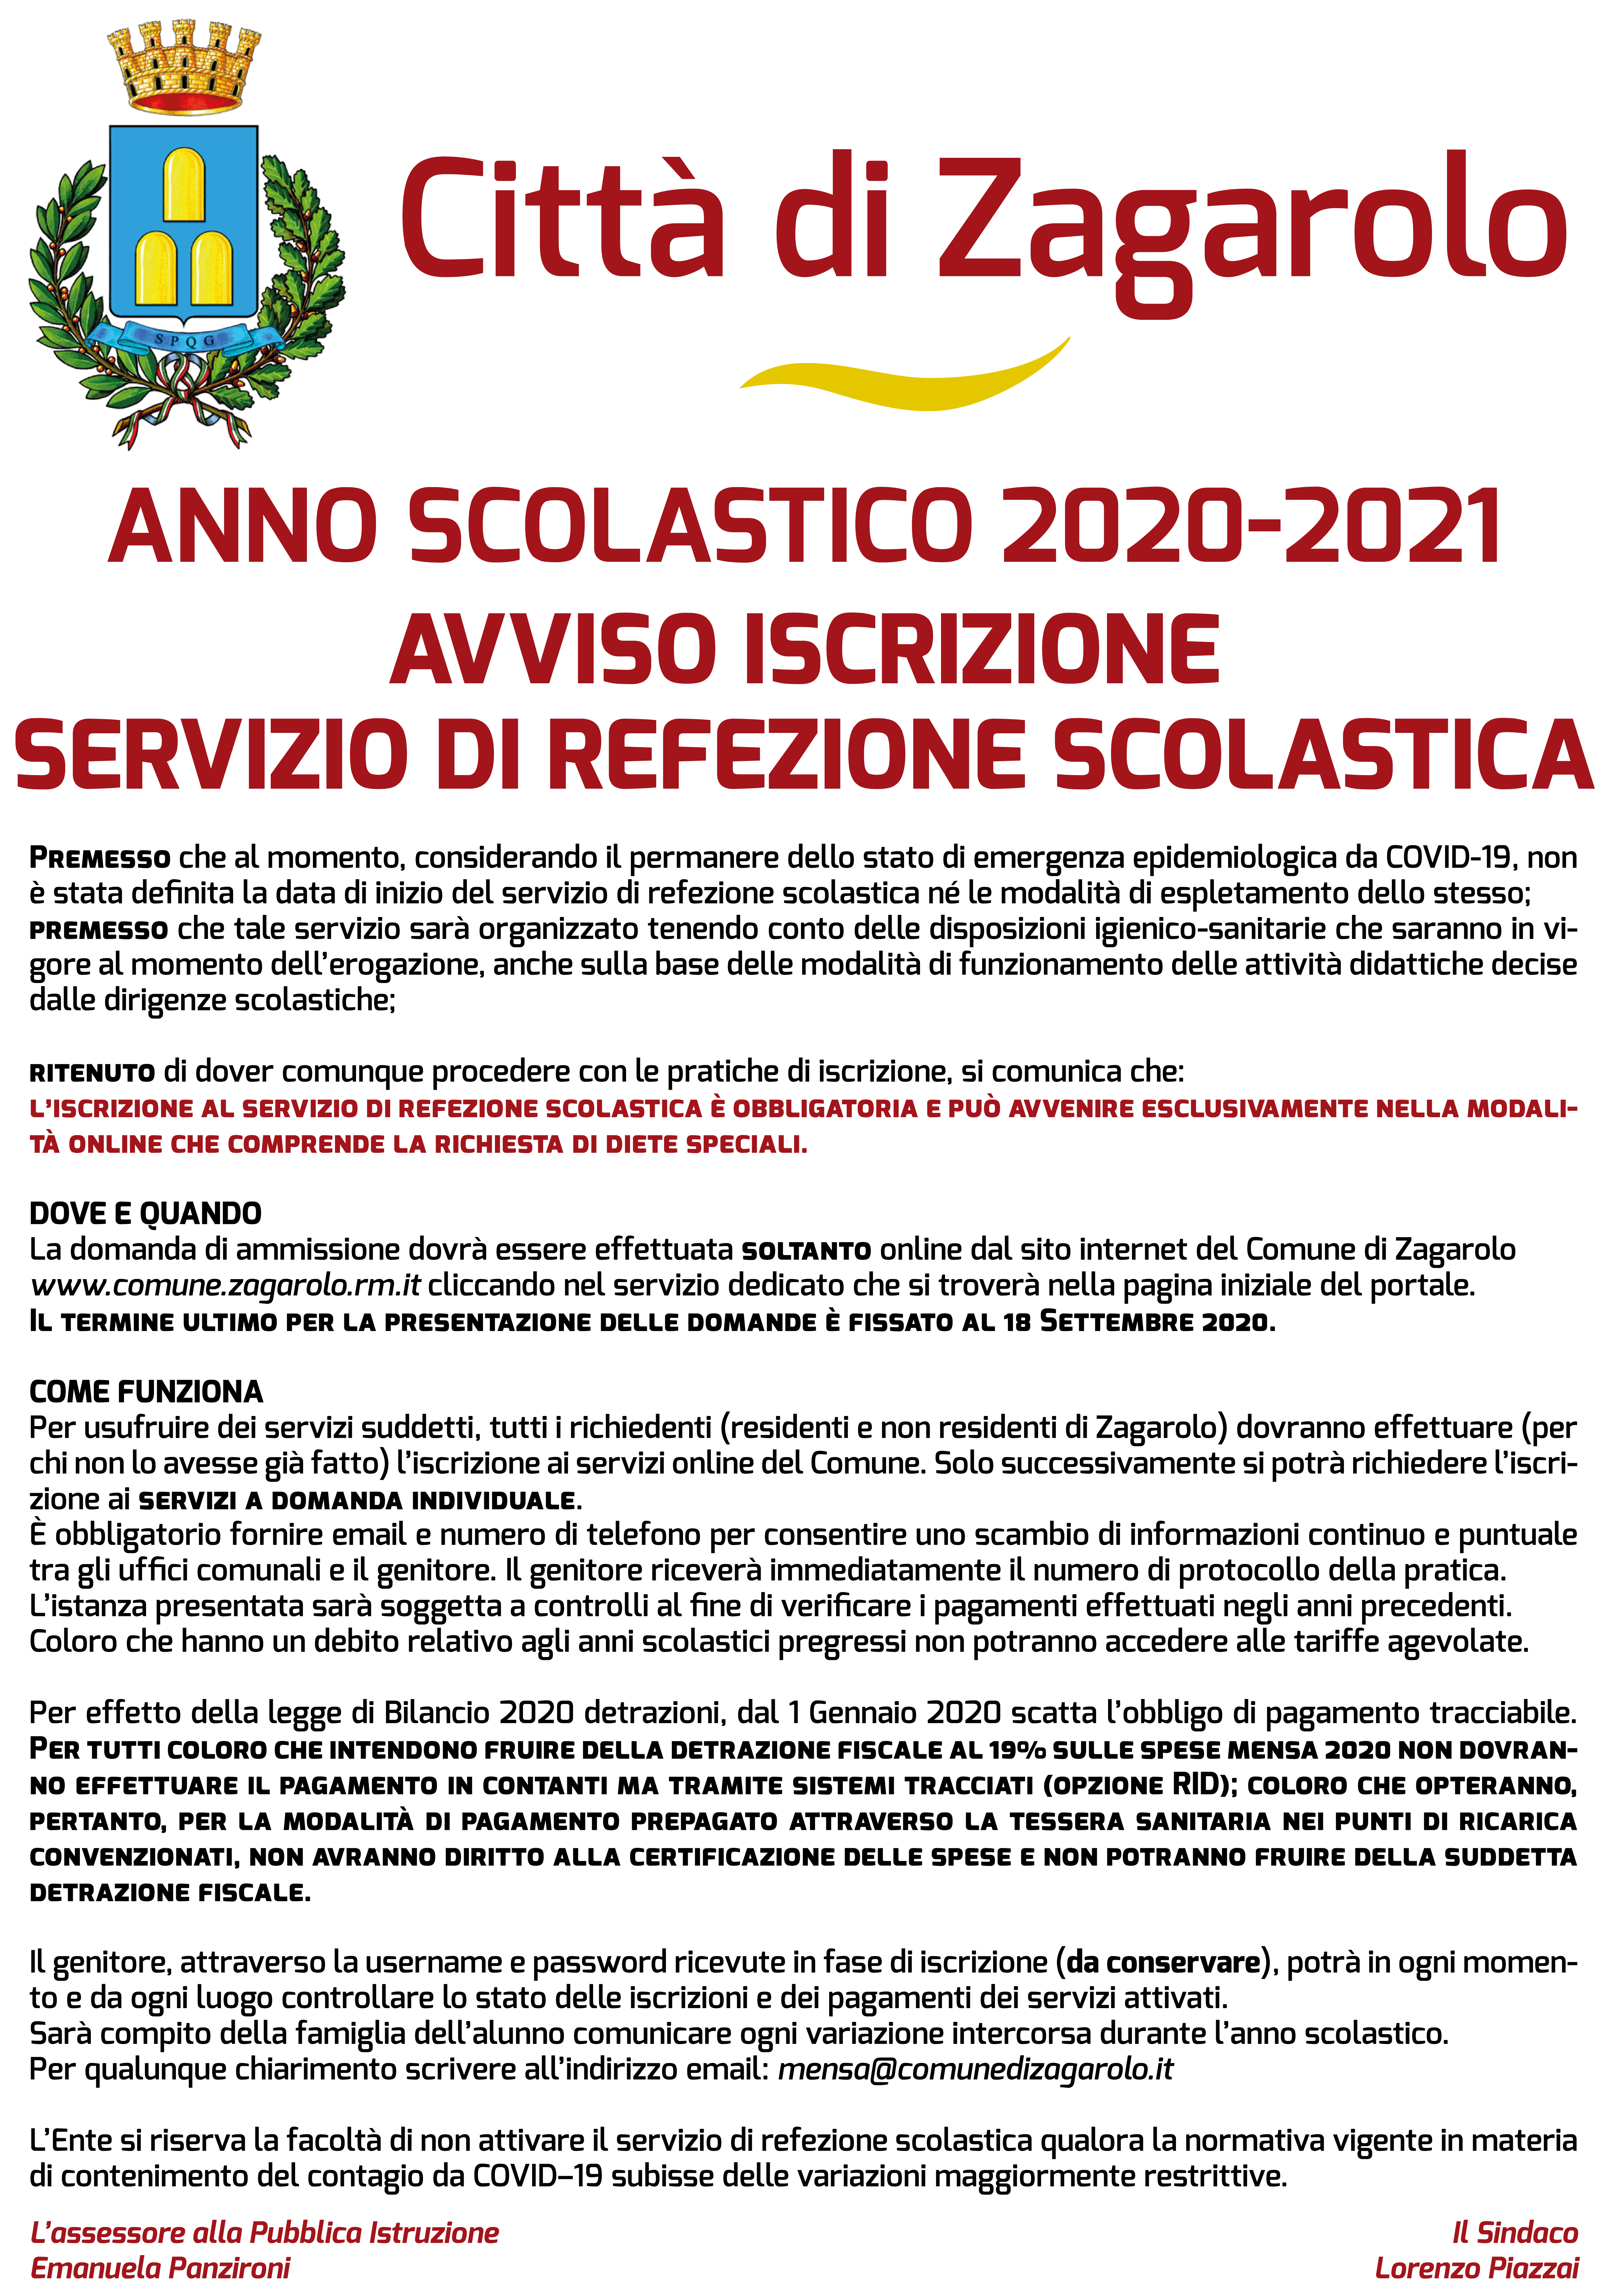 ANNO SCOLASTICO 2020-2021 - AVVISO ISCRIZIONE SERVIZIO DI REFEZIONE SCOLASTICA